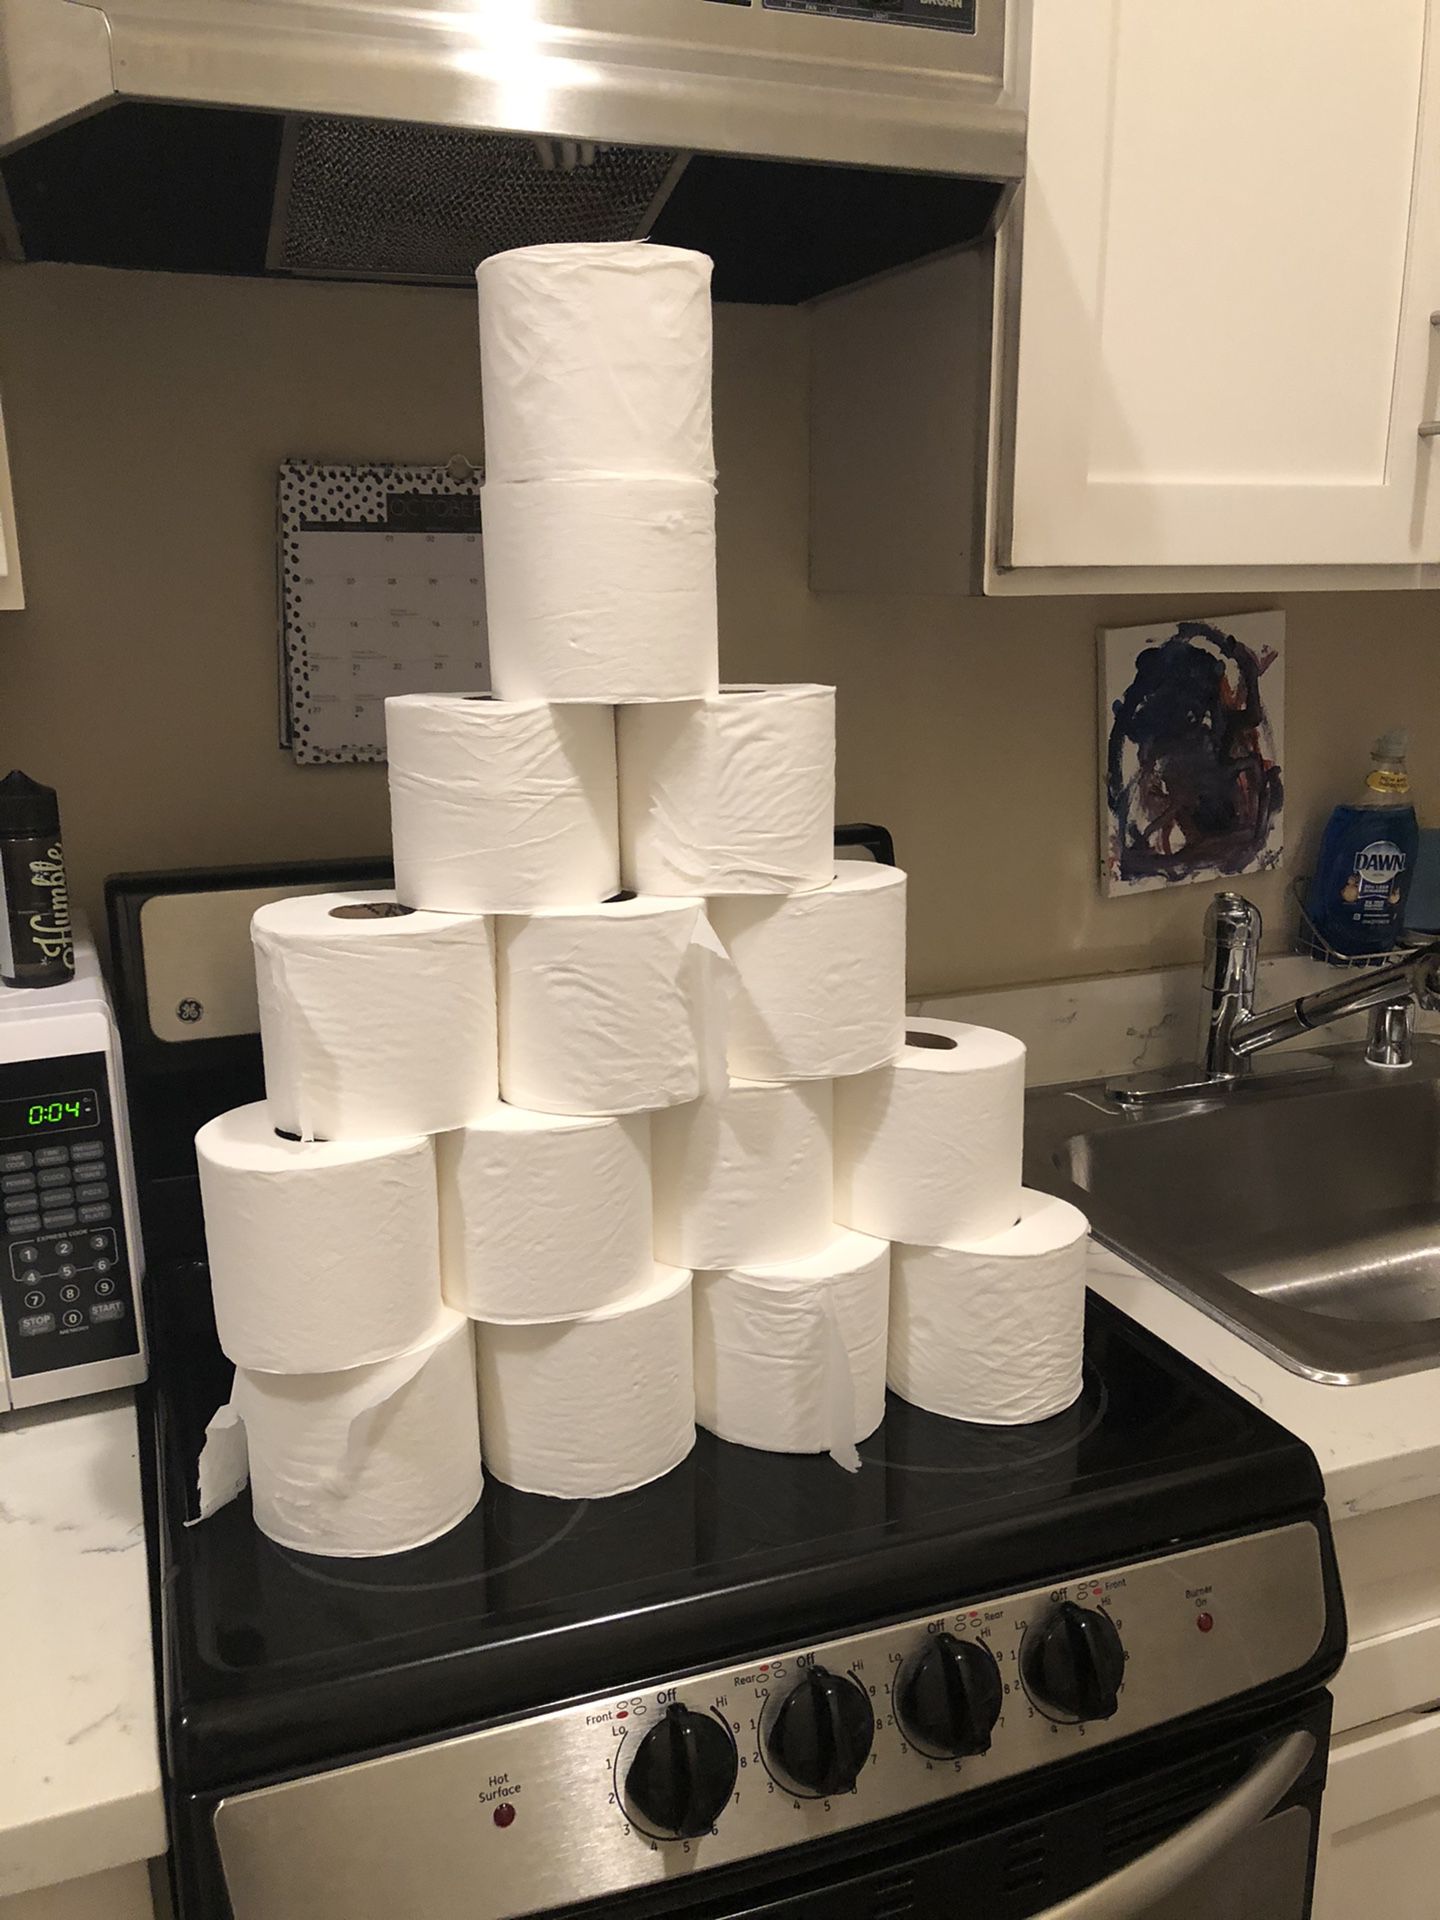 Free toilet paper